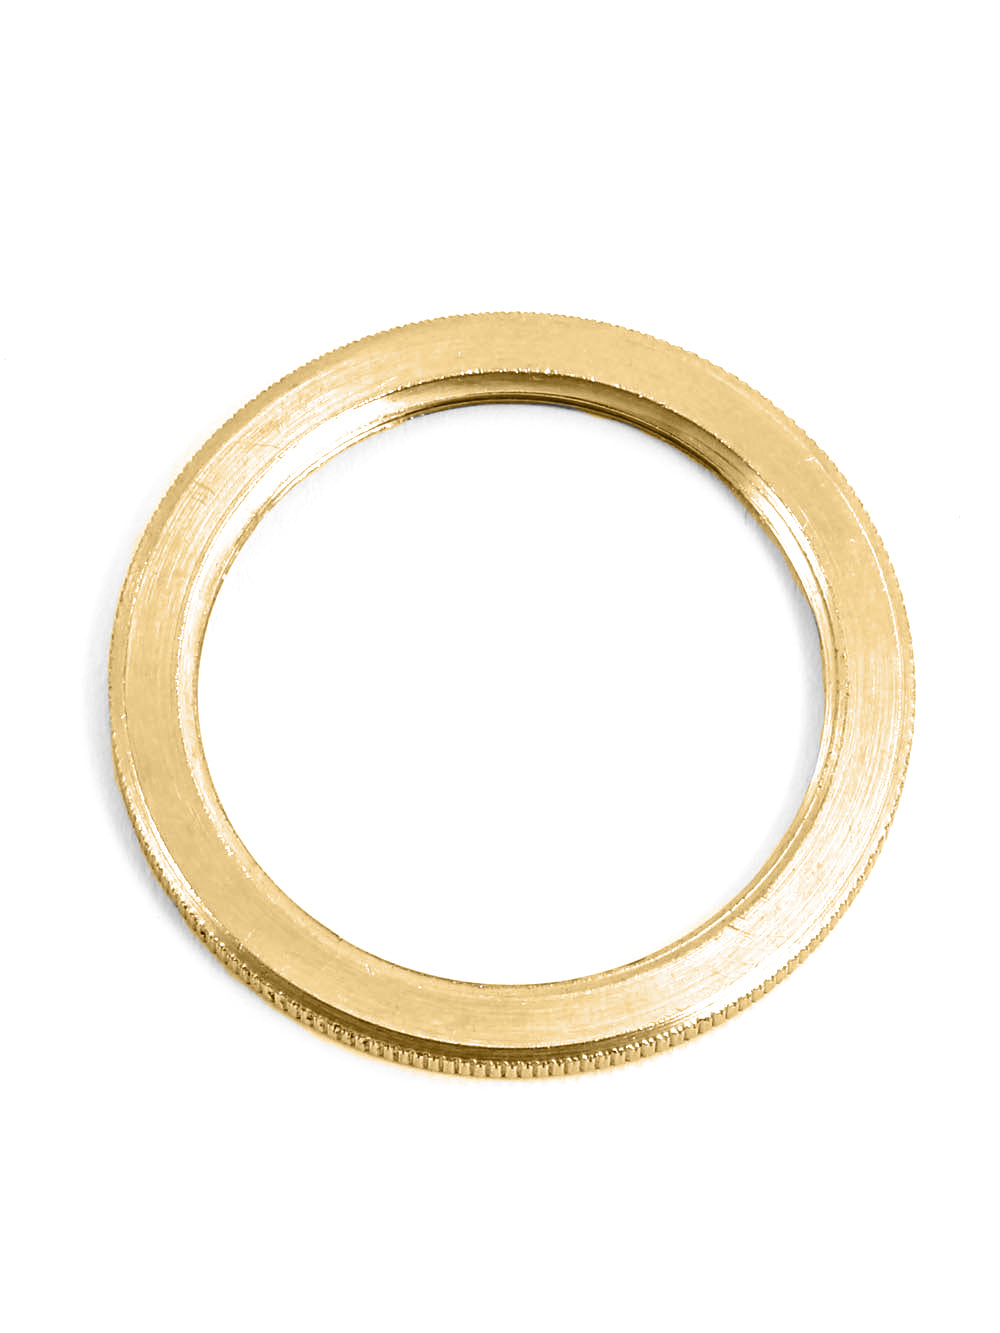 E27 Lamp Holder Shade Rings | Brass, Silver & Bronze